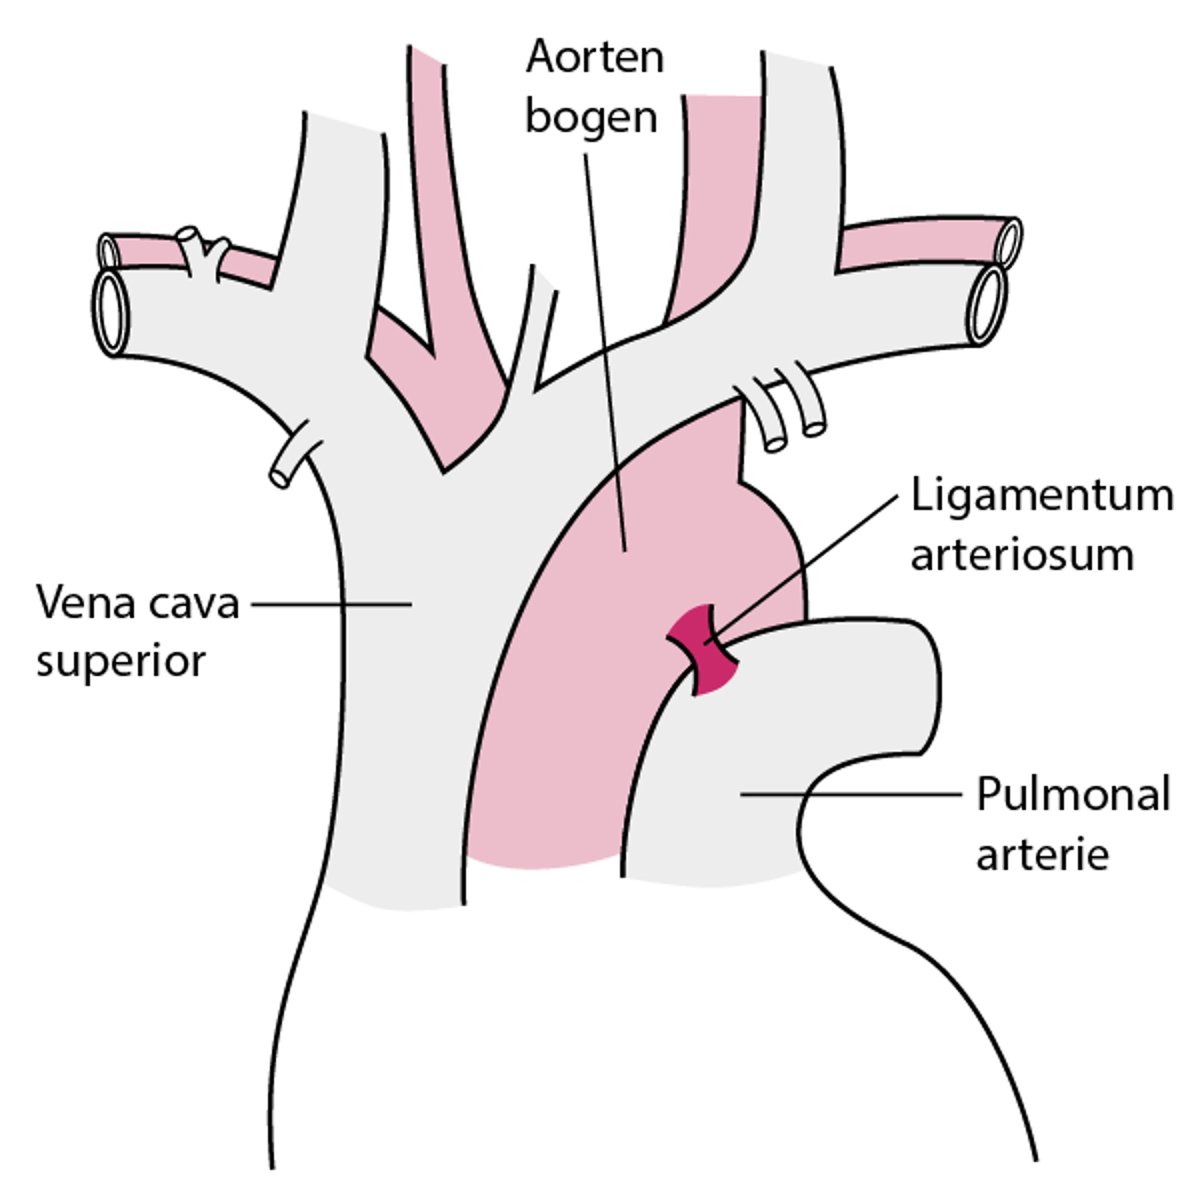 Die meisten Teilrisse der Aorta treten in der Nähe des Ligamentum arteriosum auf